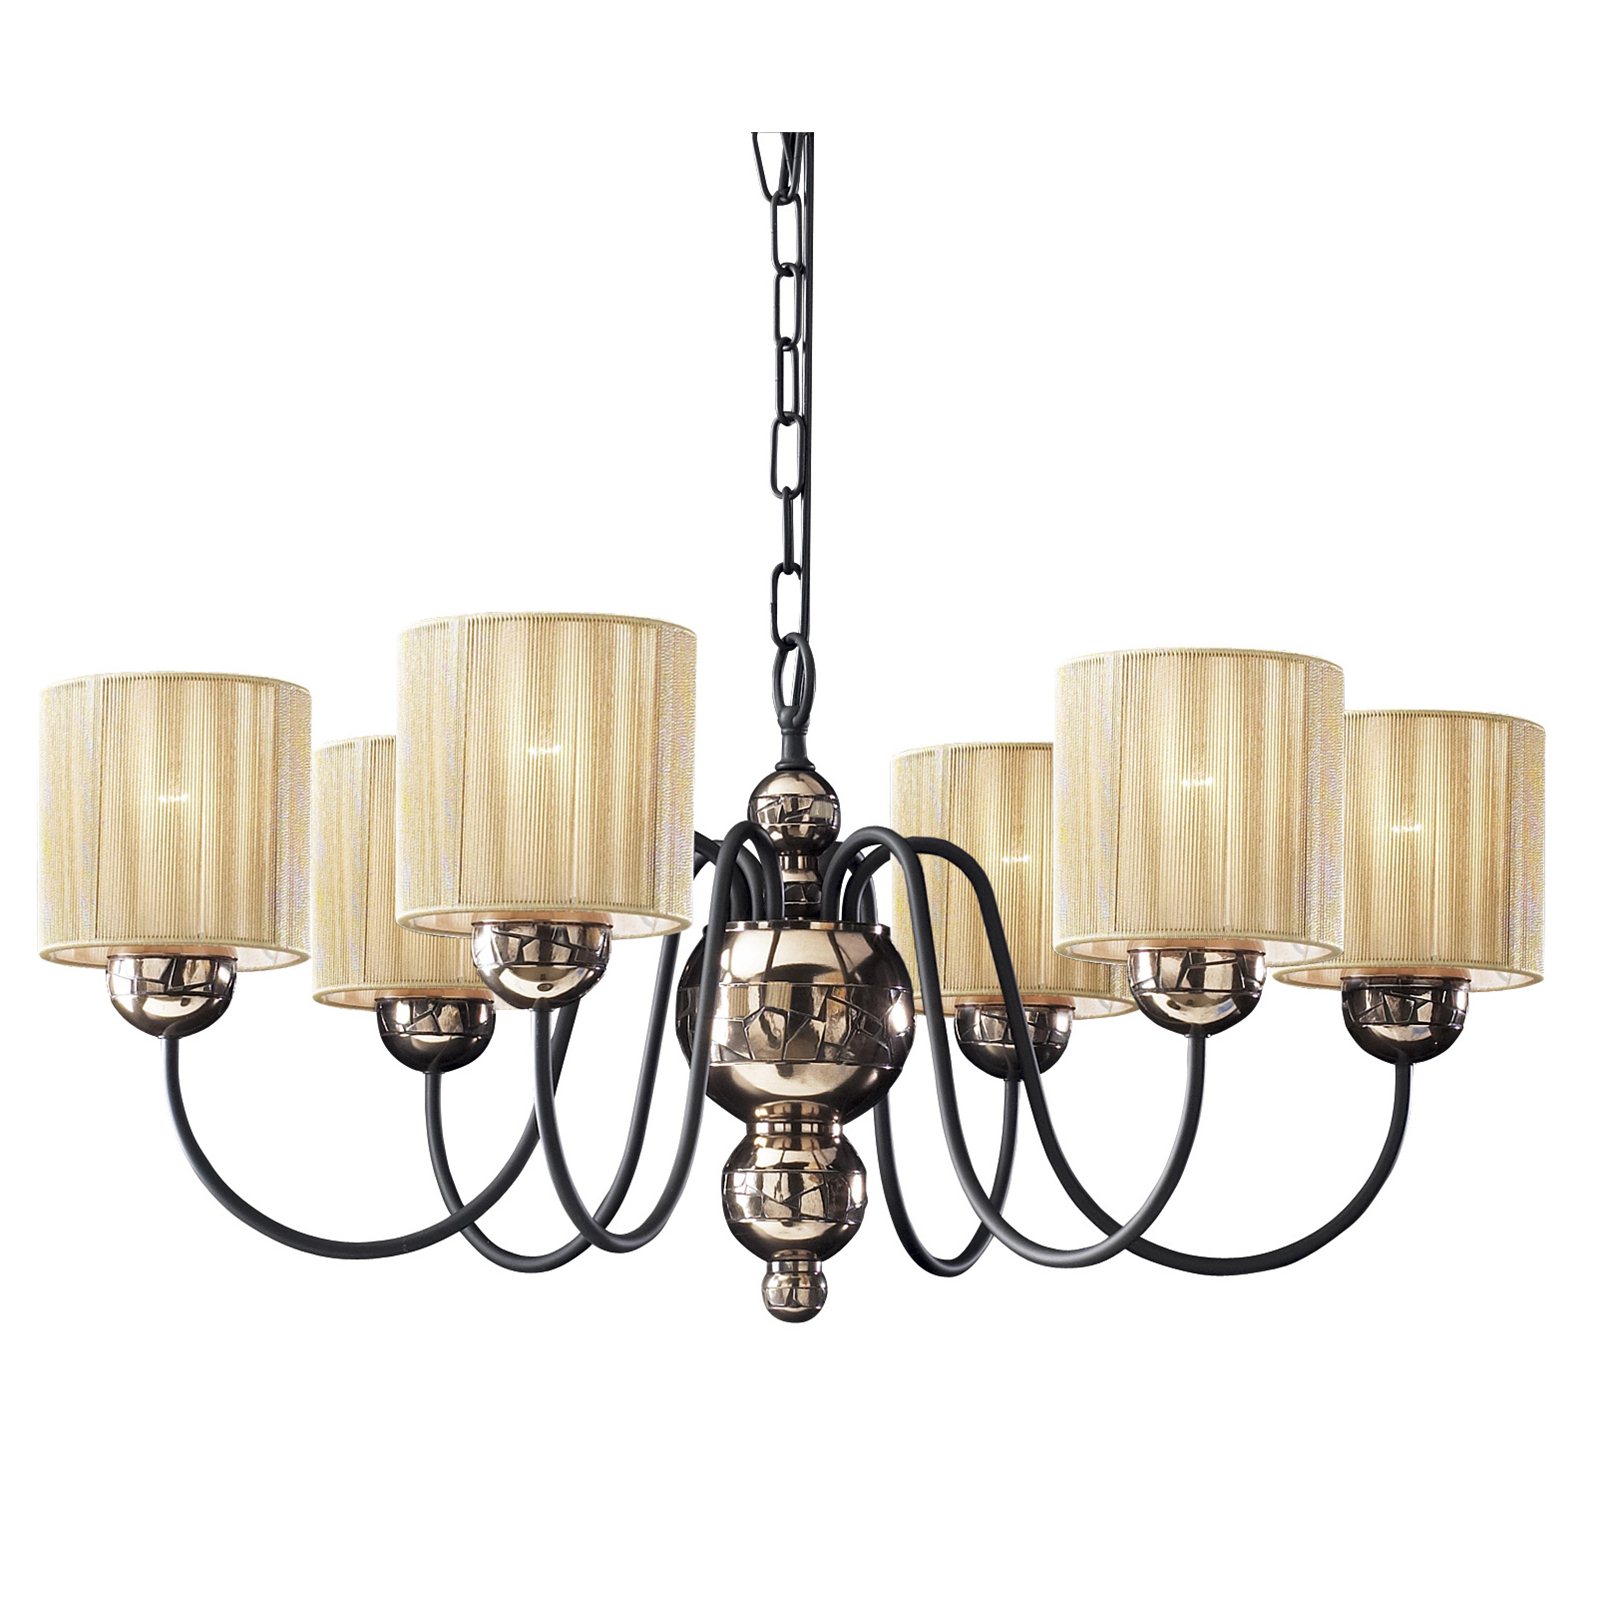 Garbo 6 light chandelier in bronze w/cream shades Image